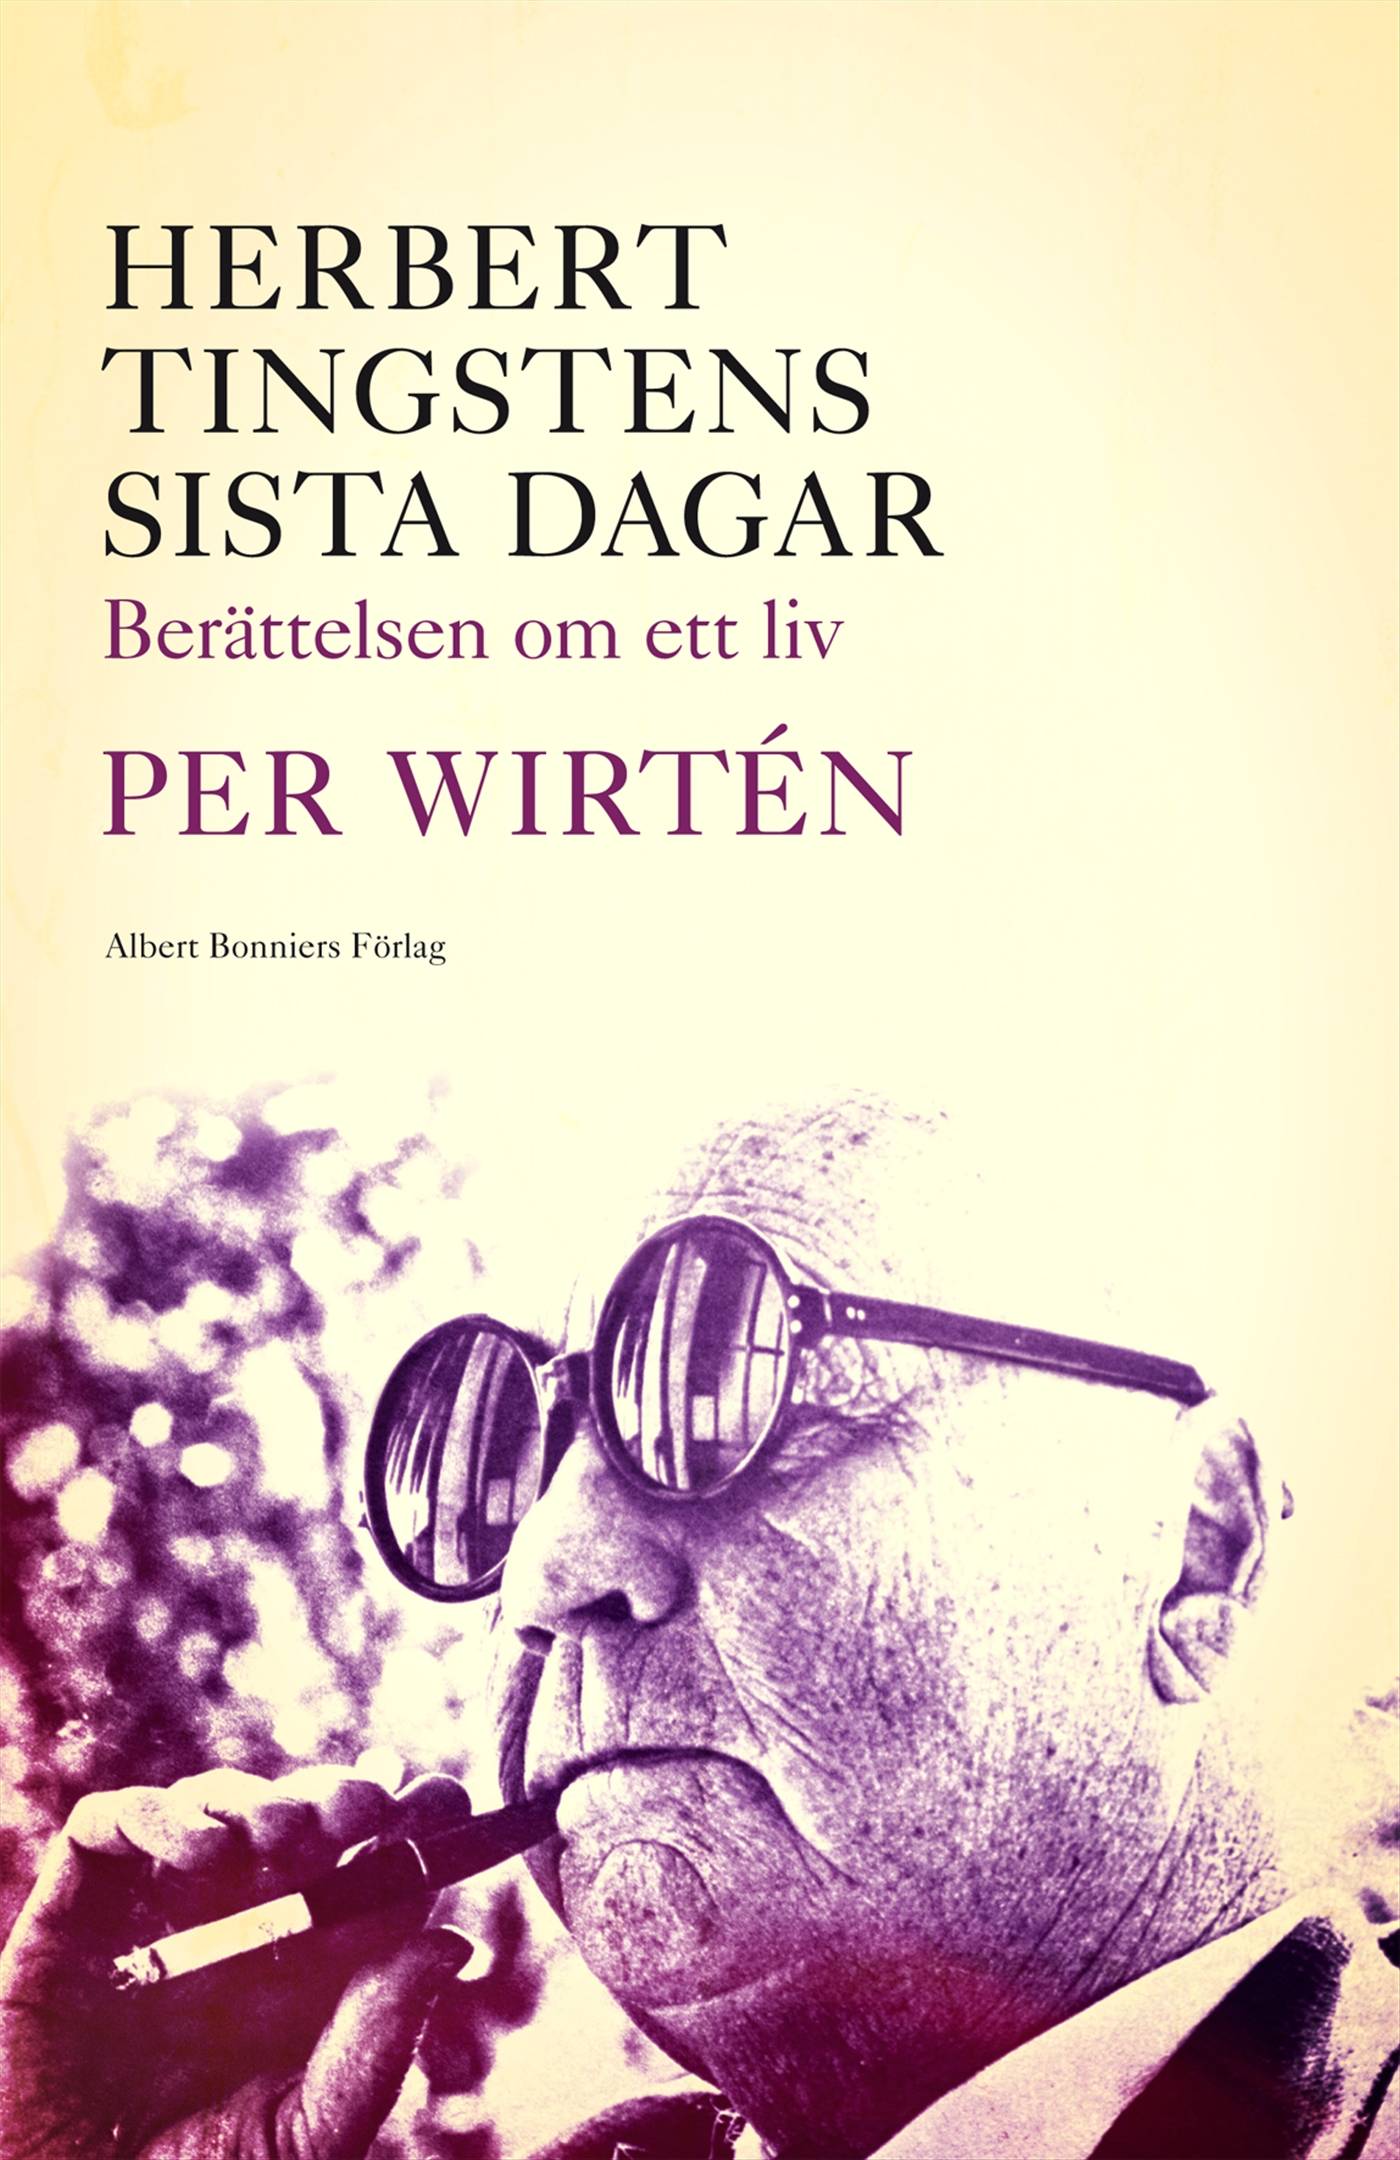 Herbert Tingstens sista dagar : berättelsen om ett liv